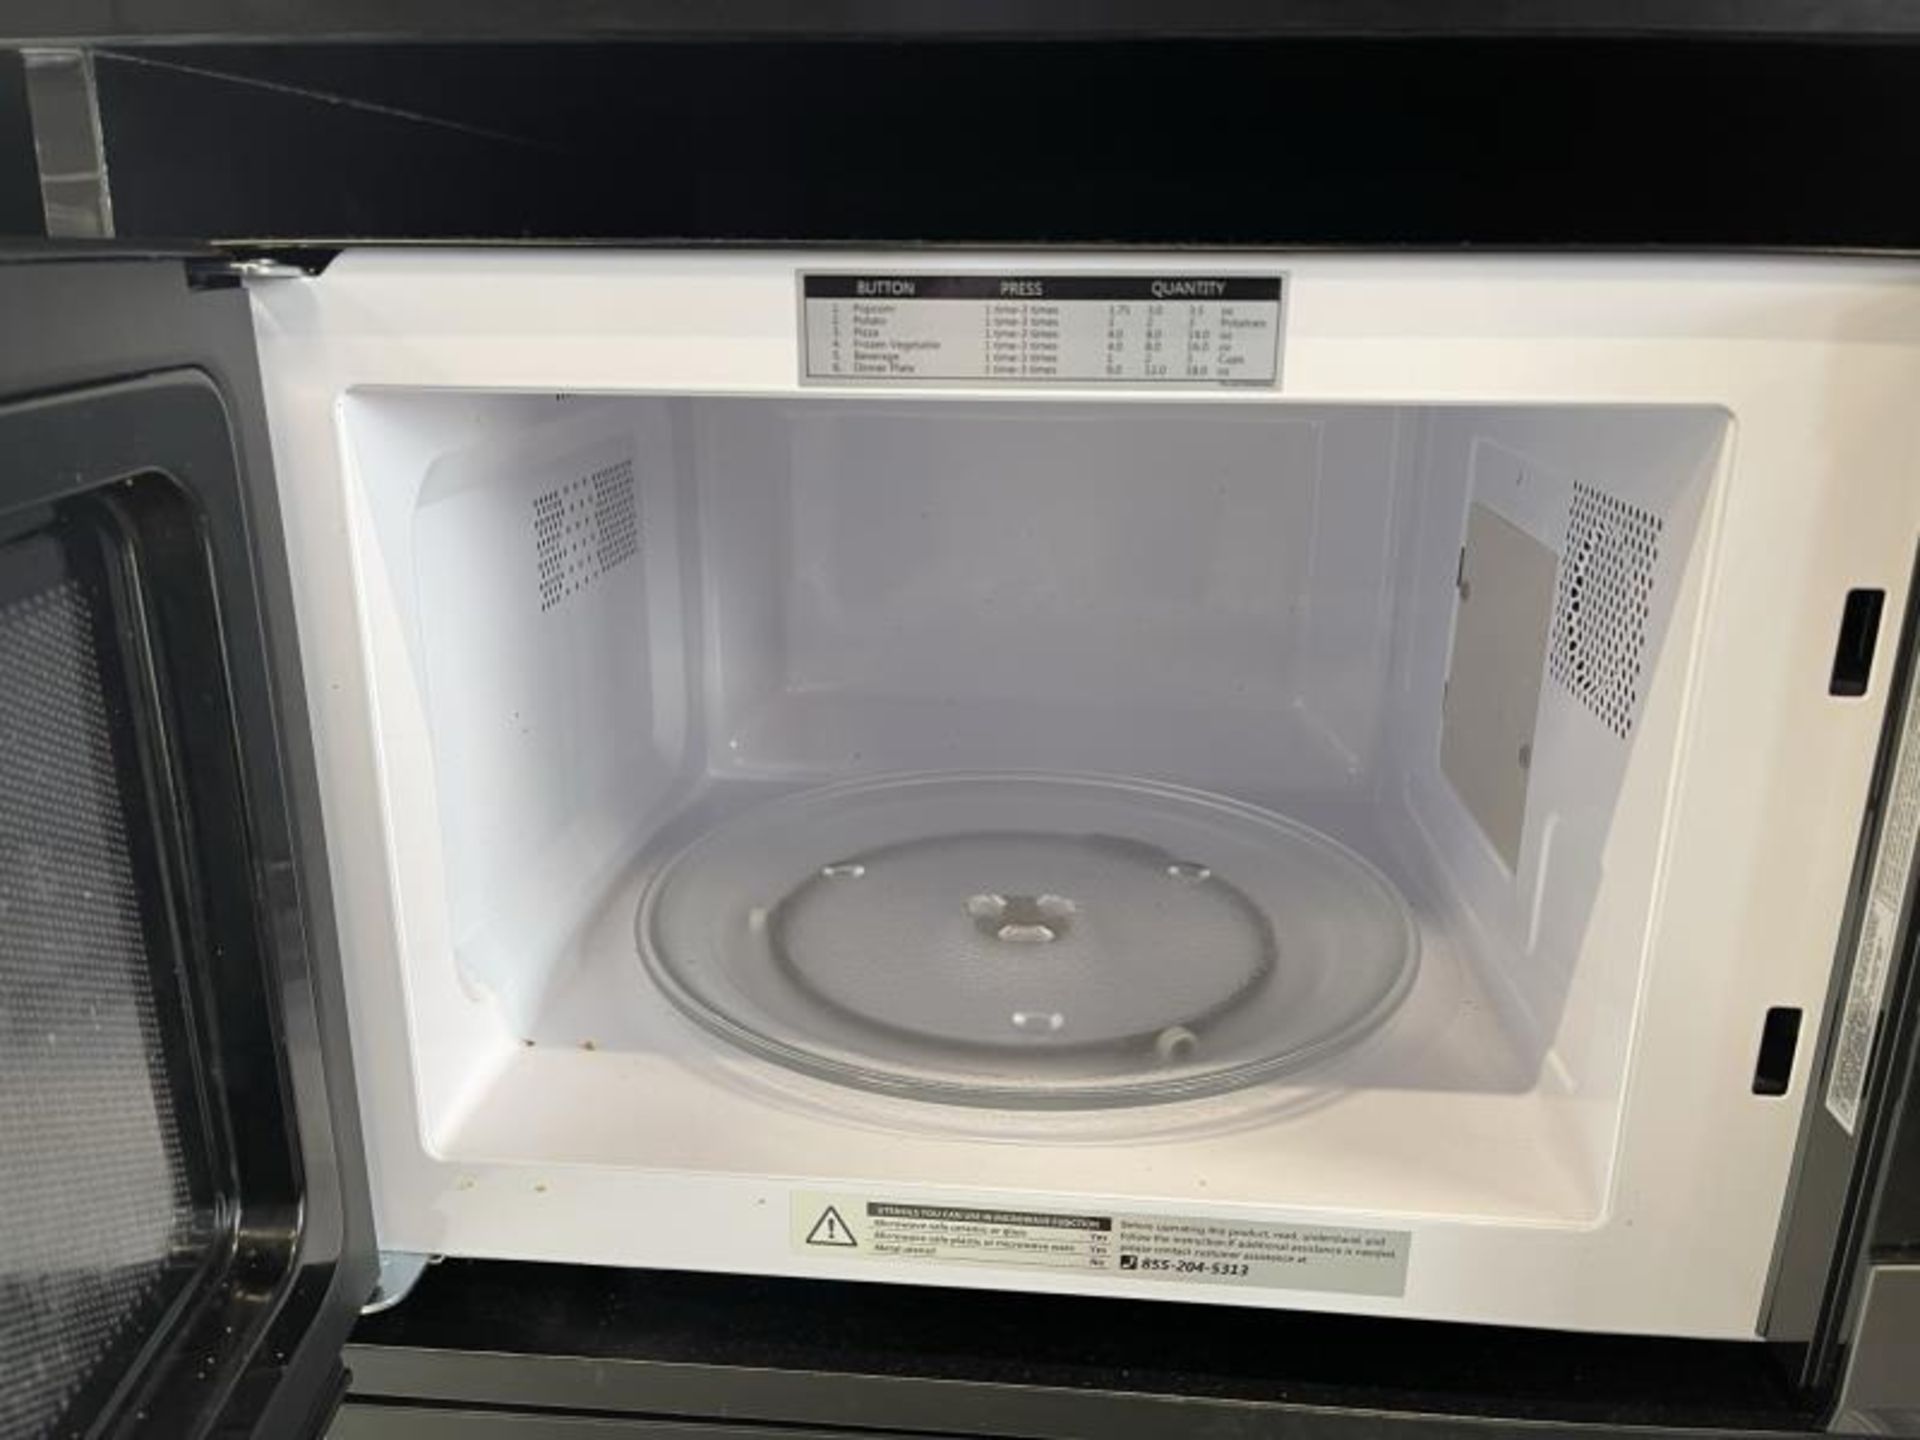 Toshiba Microwave - Image 2 of 2